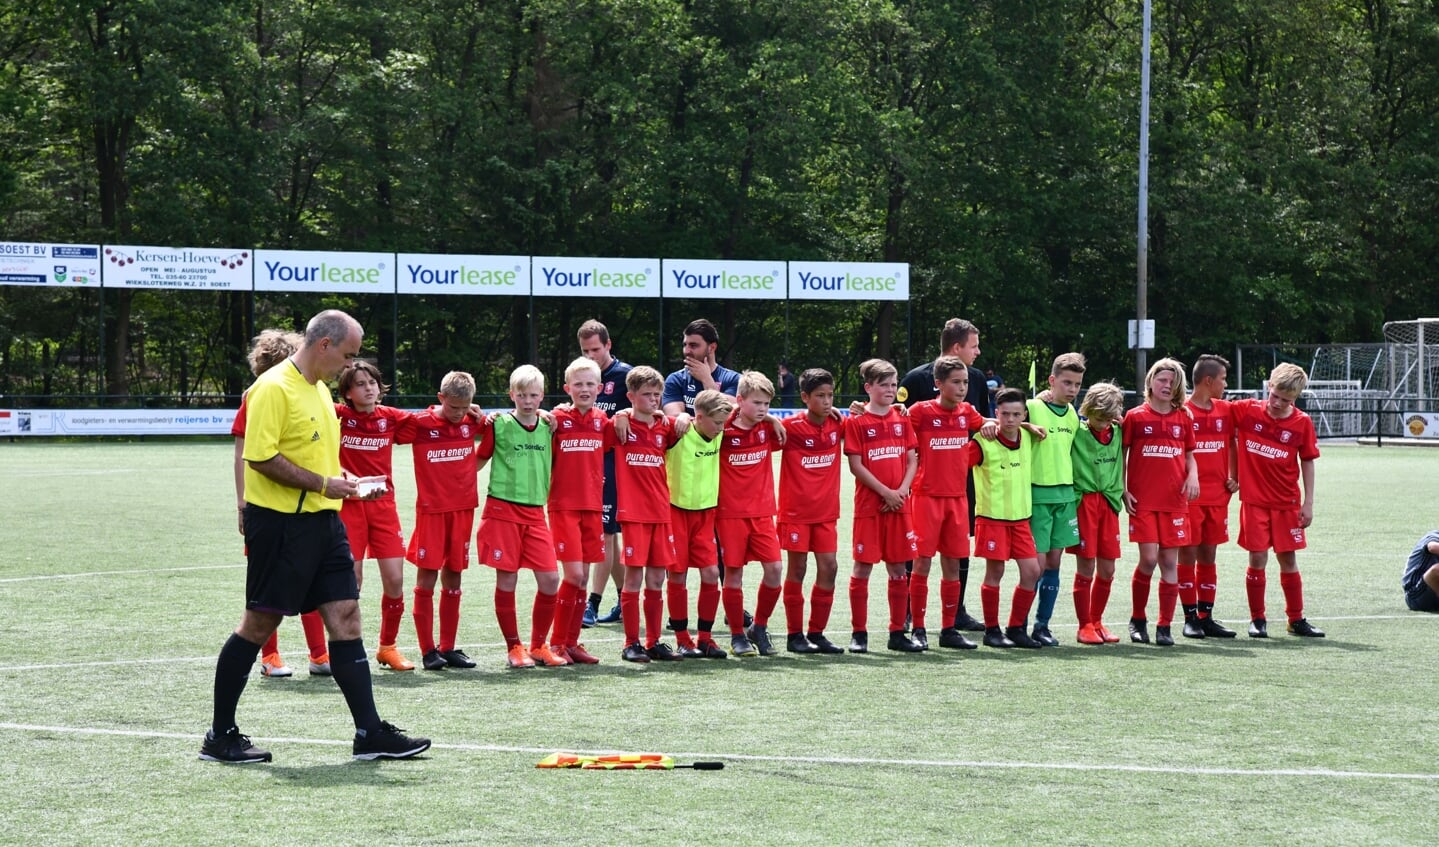 Spanning bij de spelers van FC Twente bij een strafschoppenserie